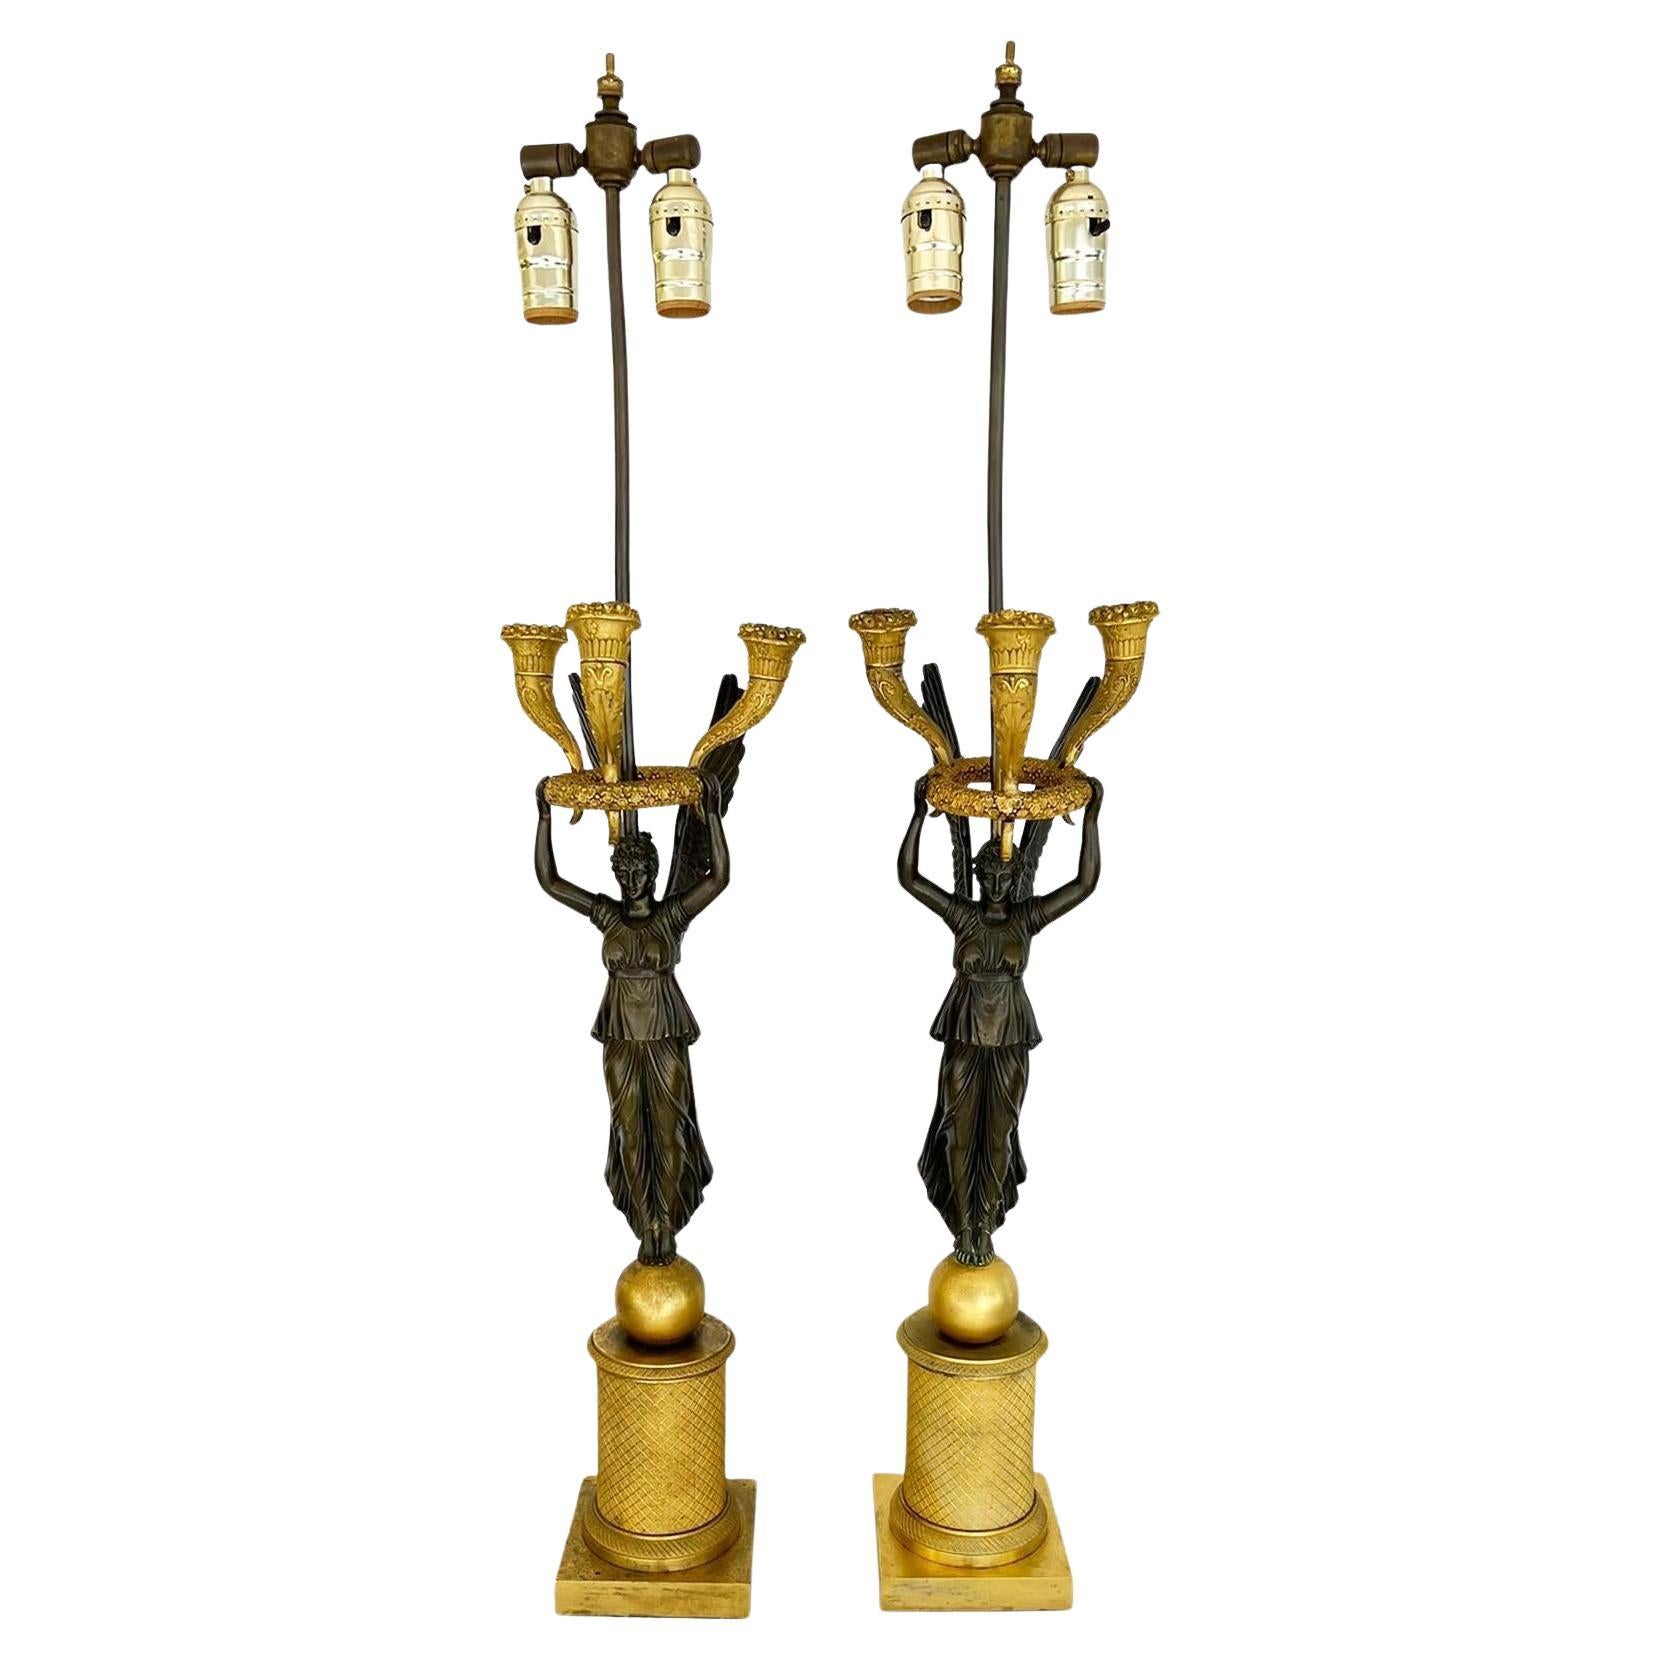 Paire de candélabres figuratifs en bronze doré et verni de la fin de l'Empire, vers 1815